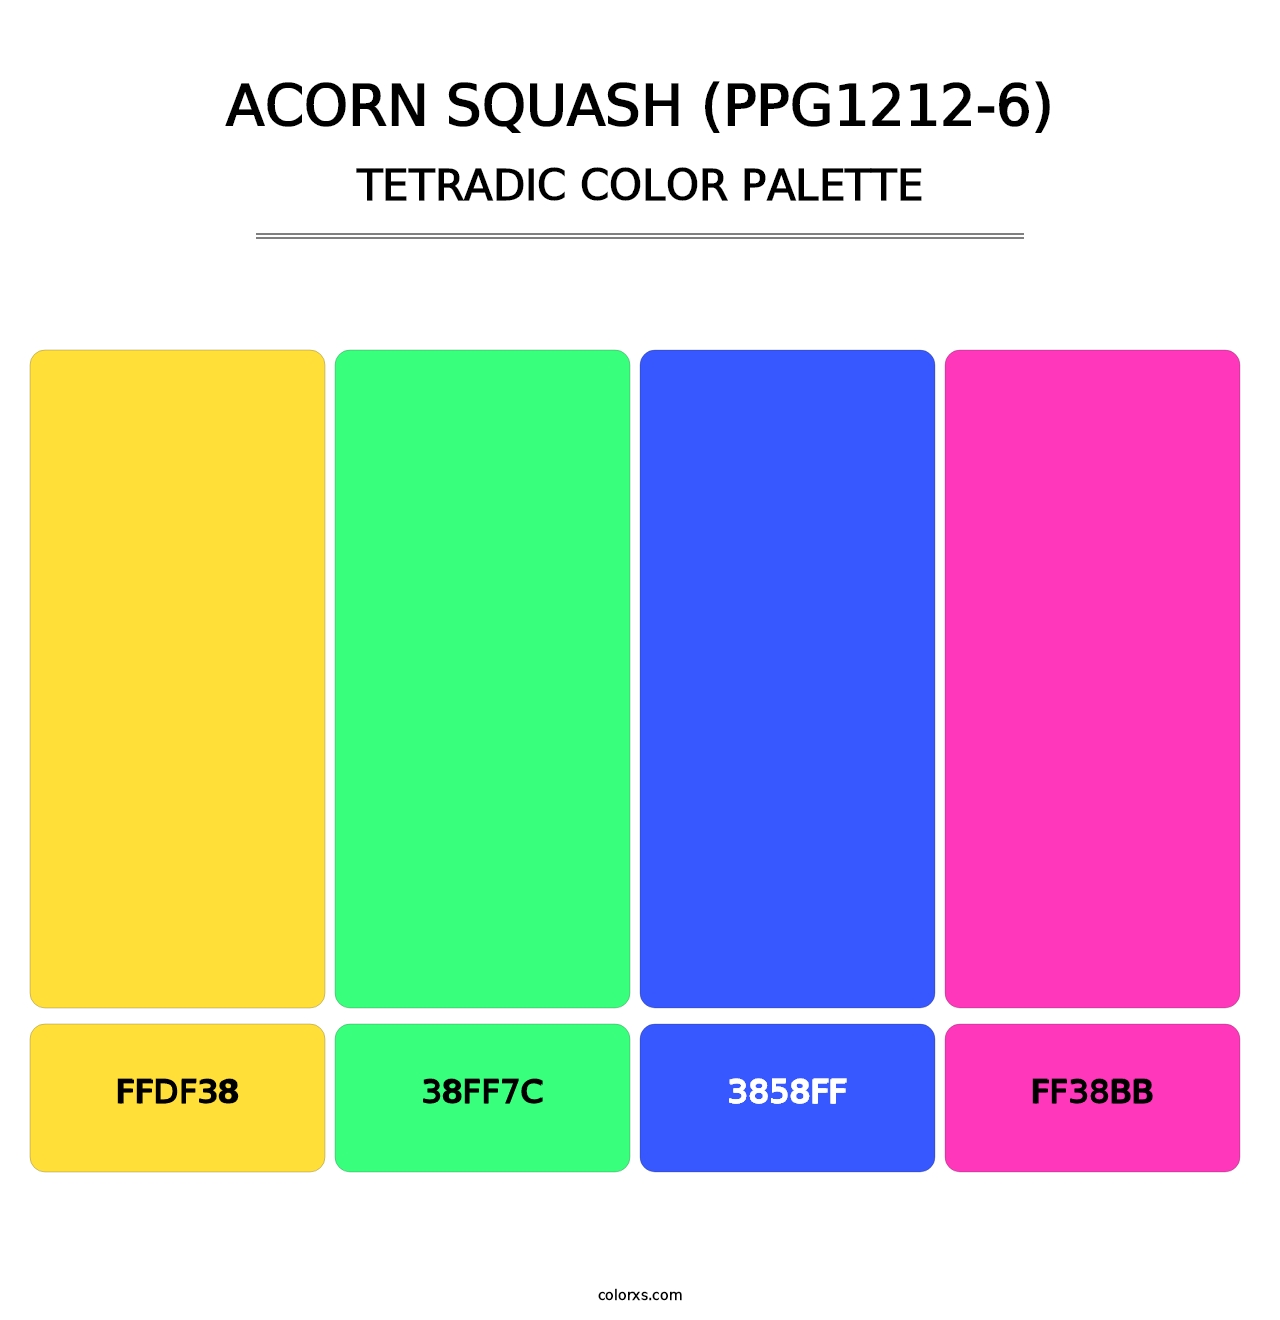 Acorn Squash (PPG1212-6) - Tetradic Color Palette